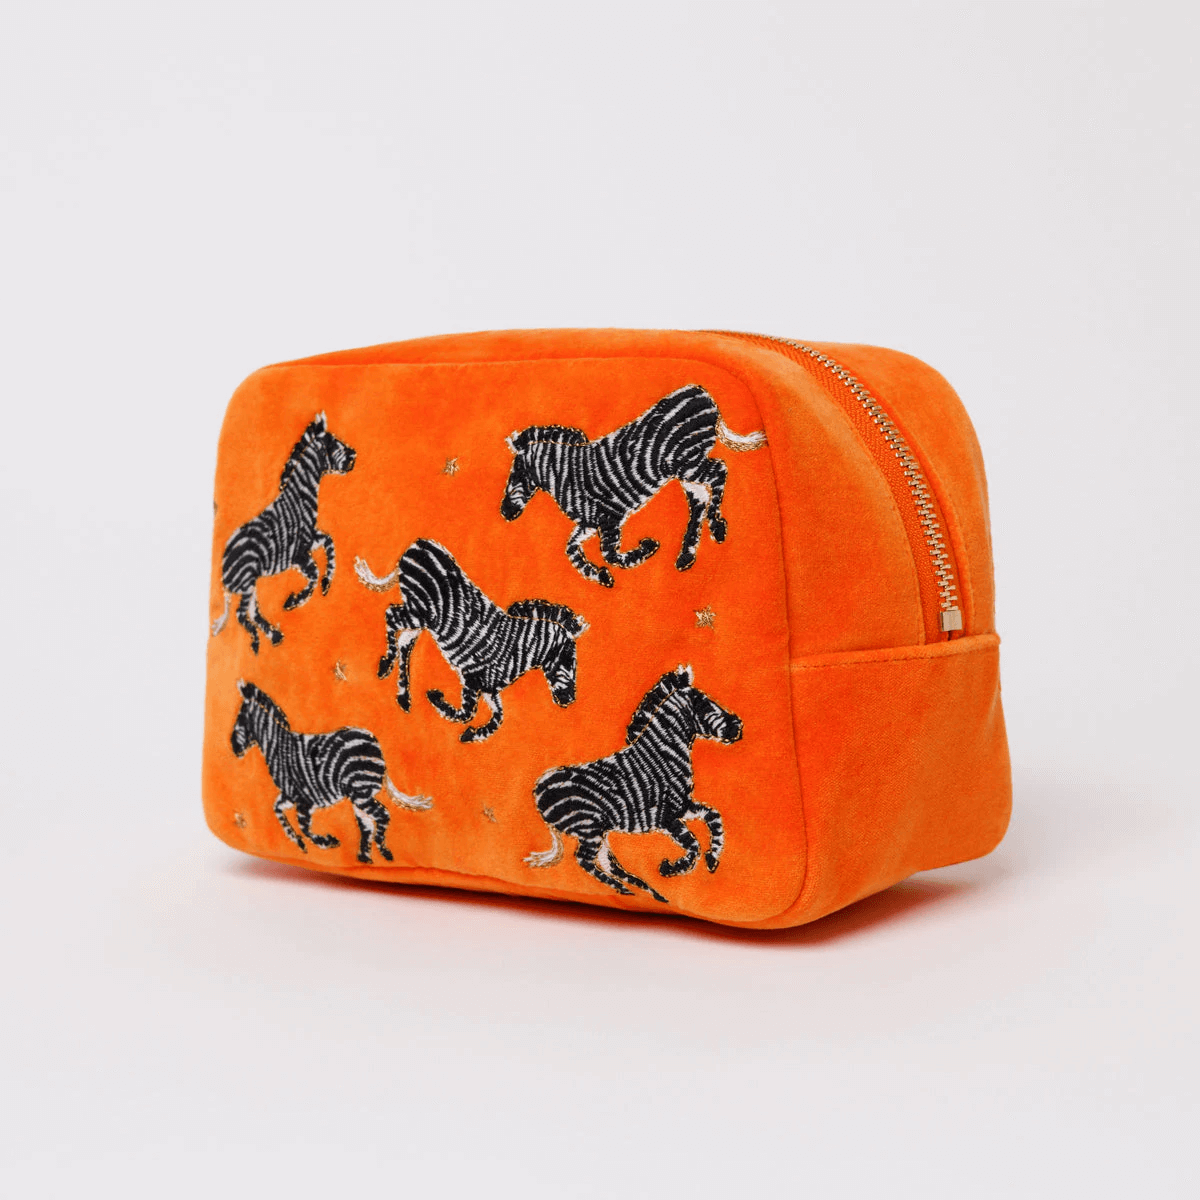 zebra-orange-velvet-cosmetics-cosmetics-bag-large-004